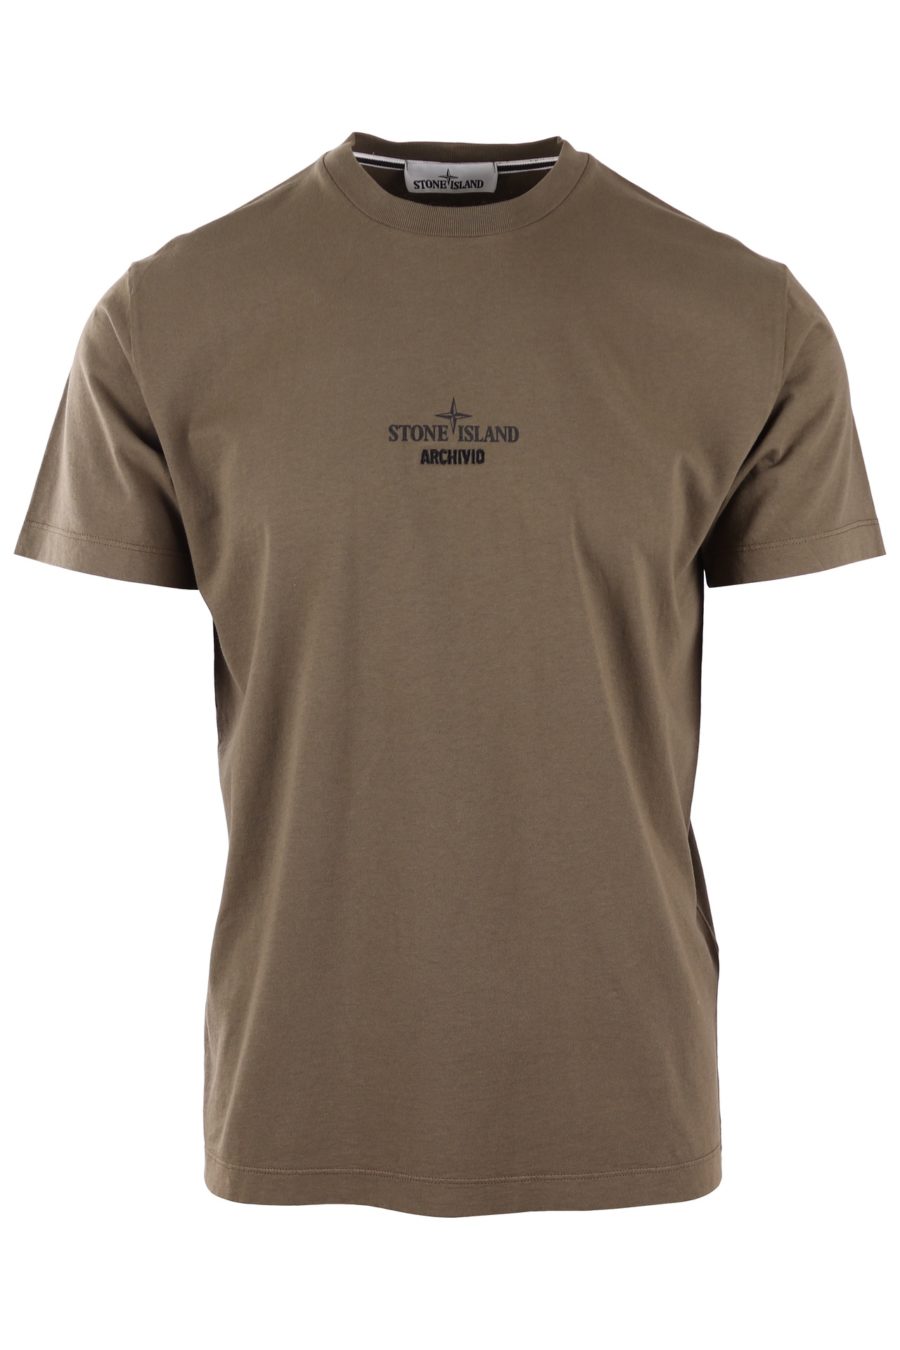 T-shirt Stone Island militärgrün mit Logo "archivio" - 8dc94f6327d3864625f3278522f969706e822ce7